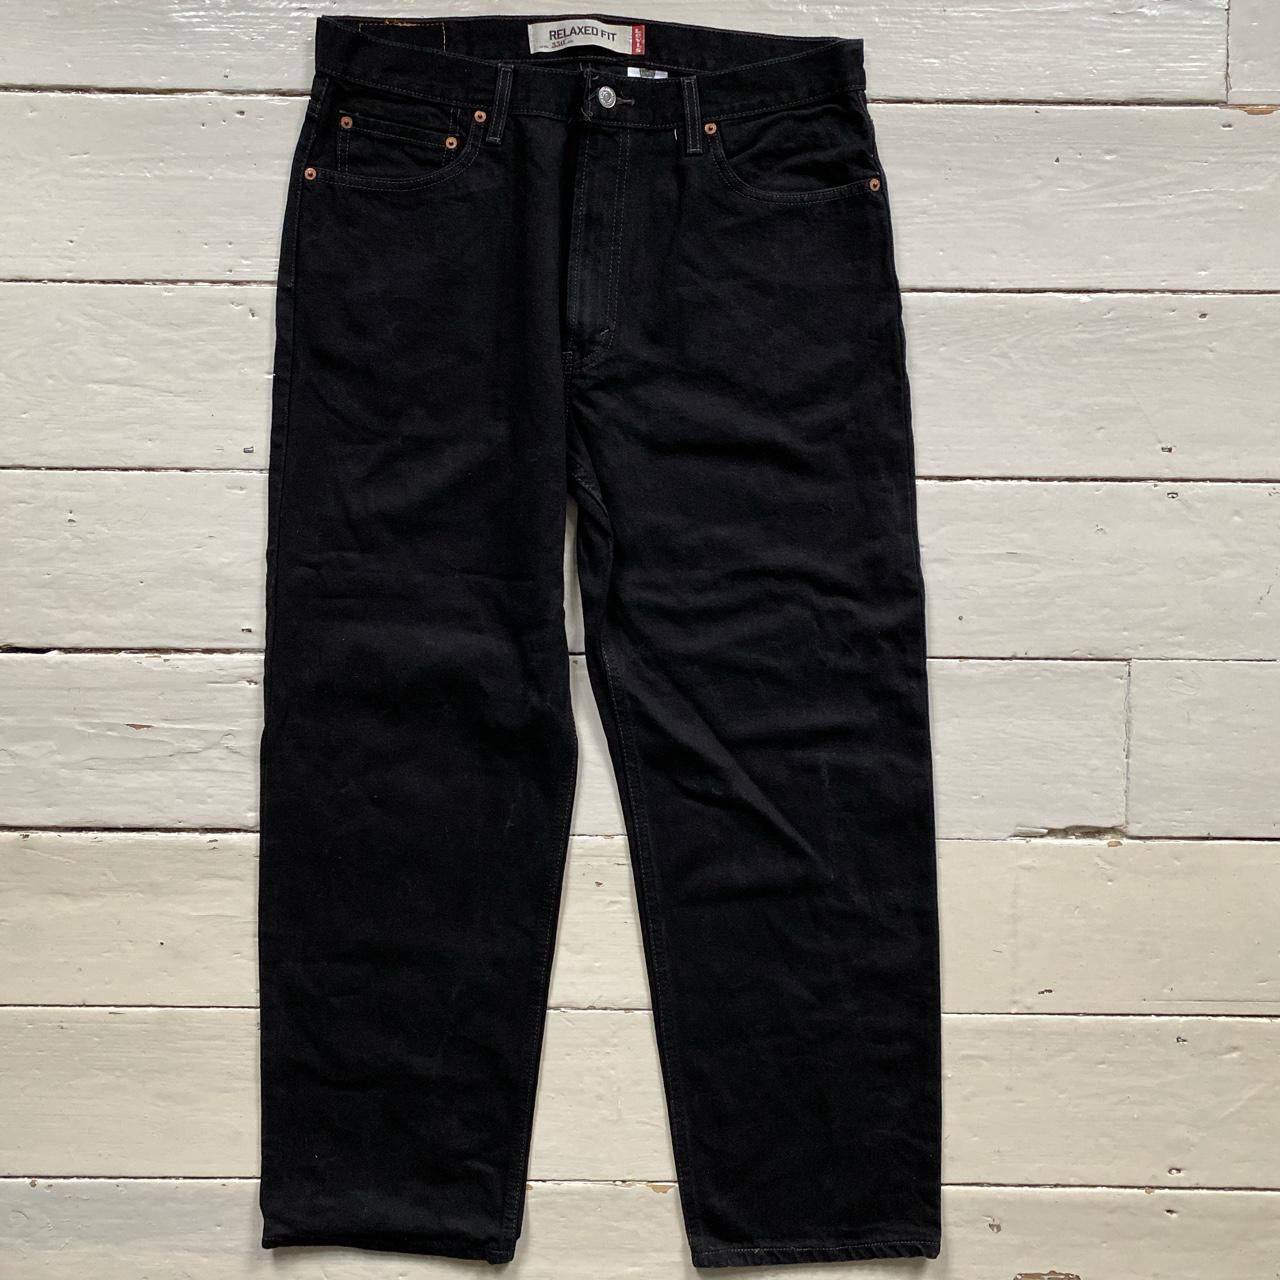 Levis 550 Black Jeans (36/30)